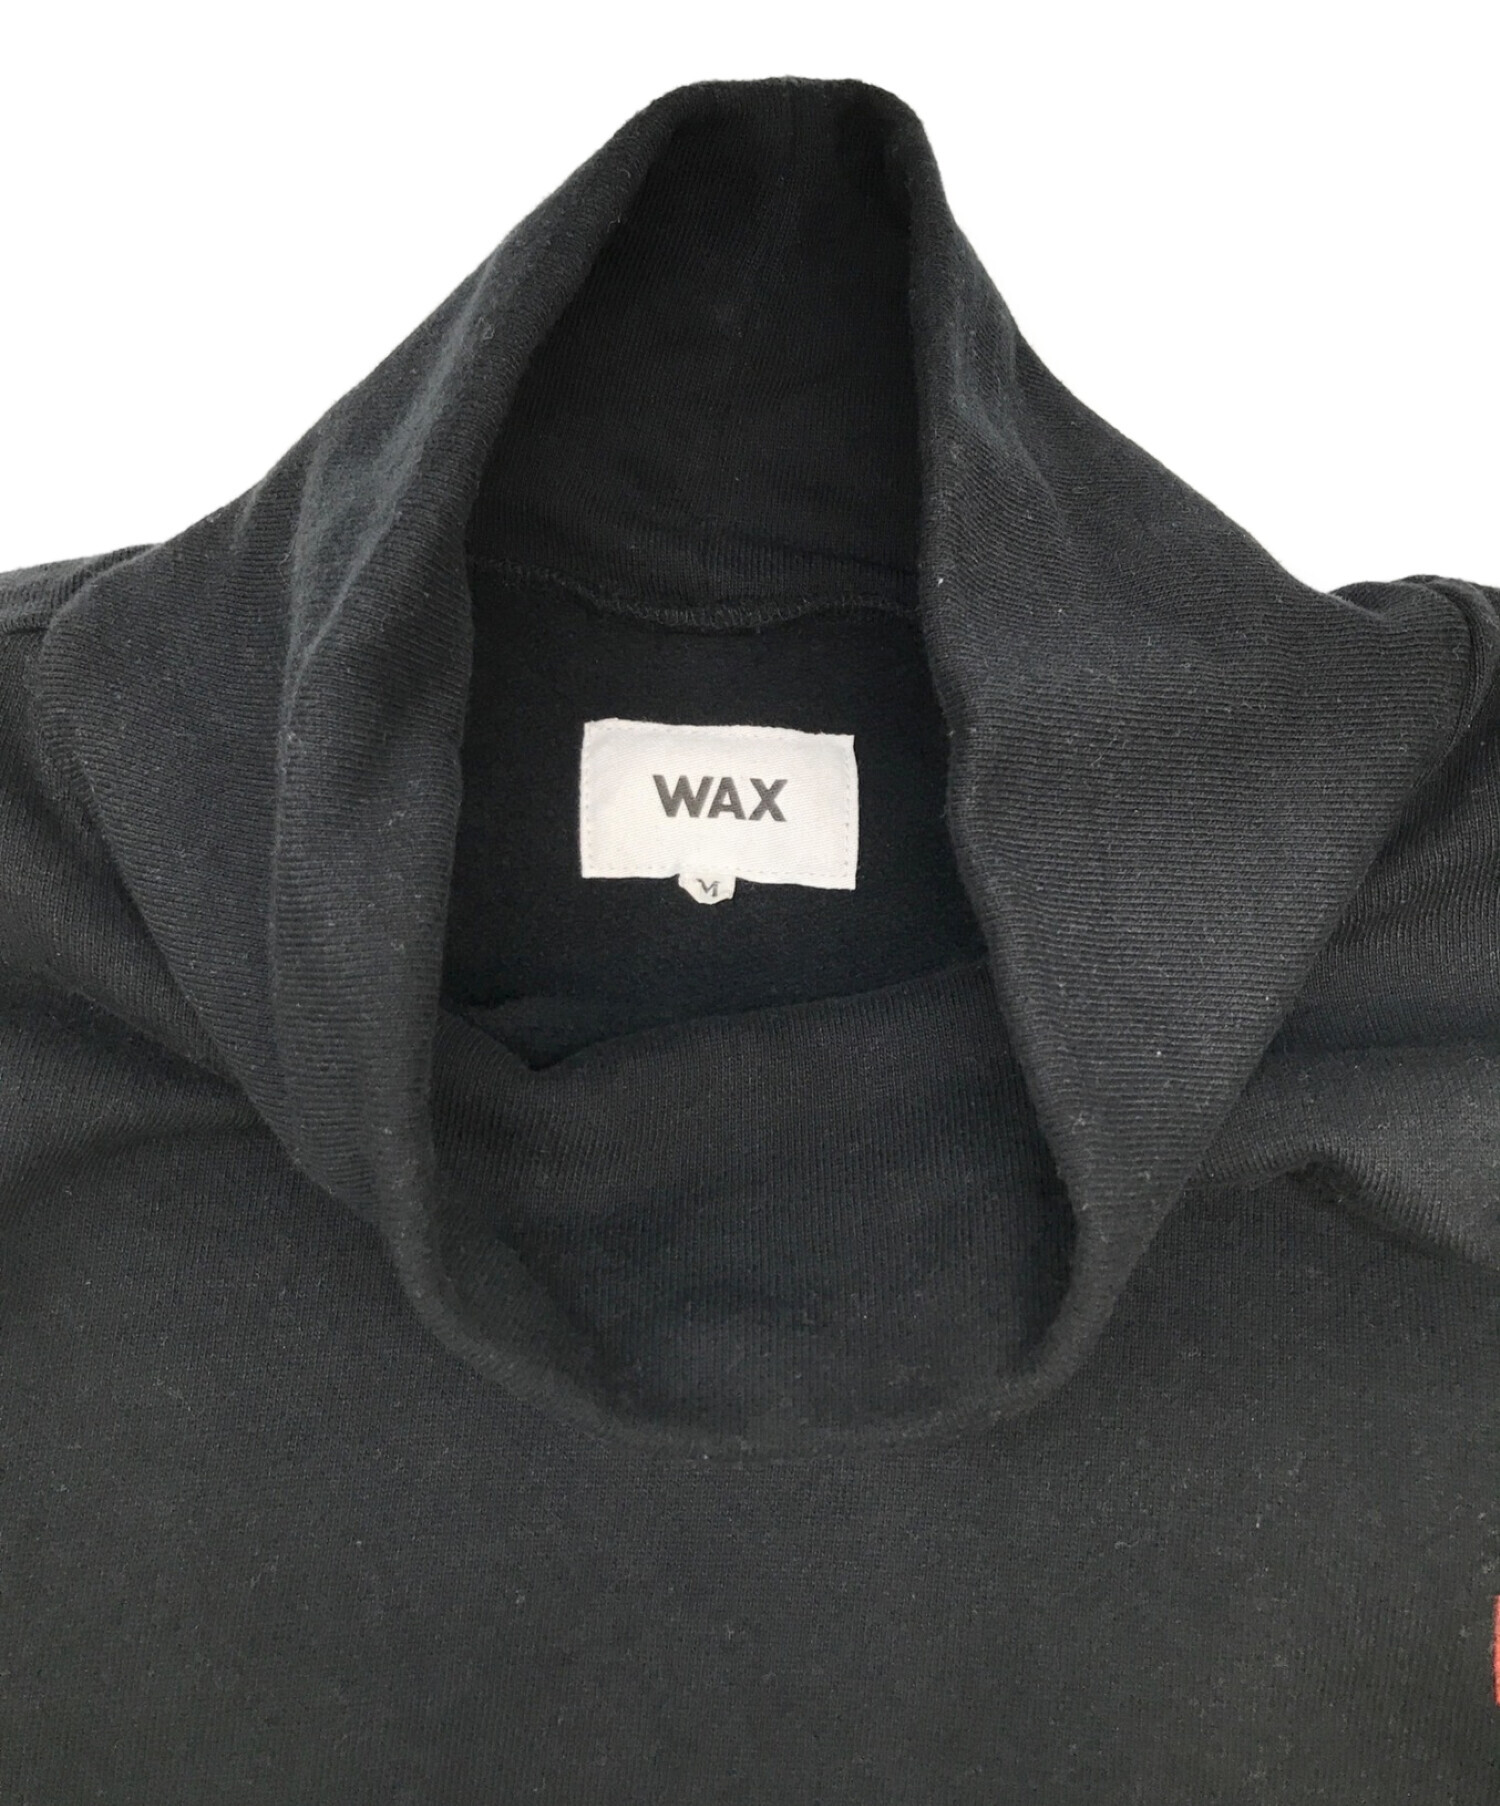 WAX (ワックス) タートルネック トレーナー ブラック サイズ:M